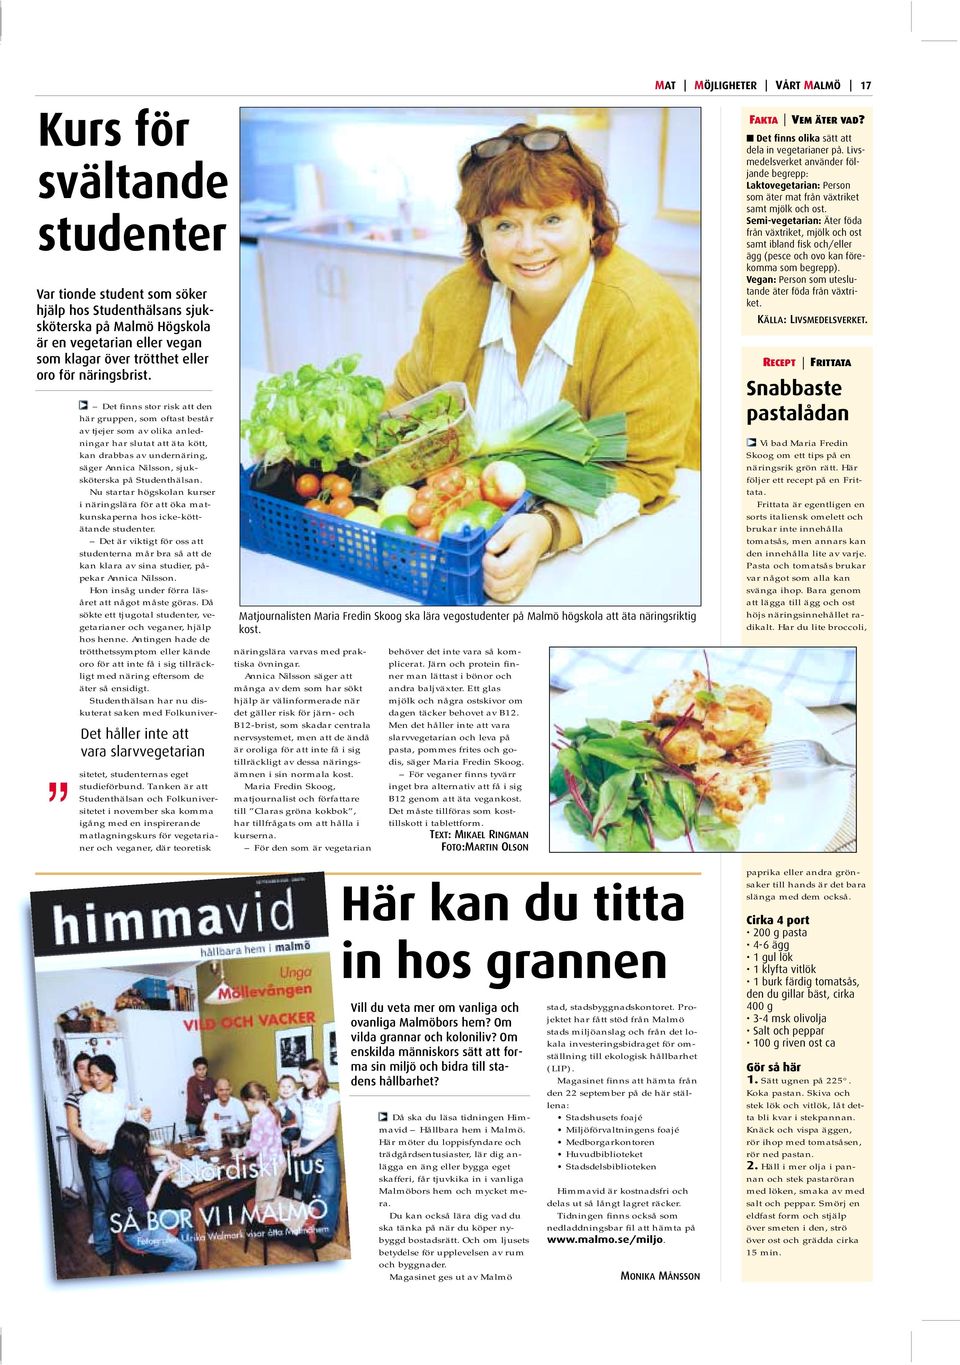 Annica Nilsson, sjuksköterska på Studenthälsan. Nu startar högskolan kurser i näringslära för att öka matkunskaperna hos icke-köttätande studenter.